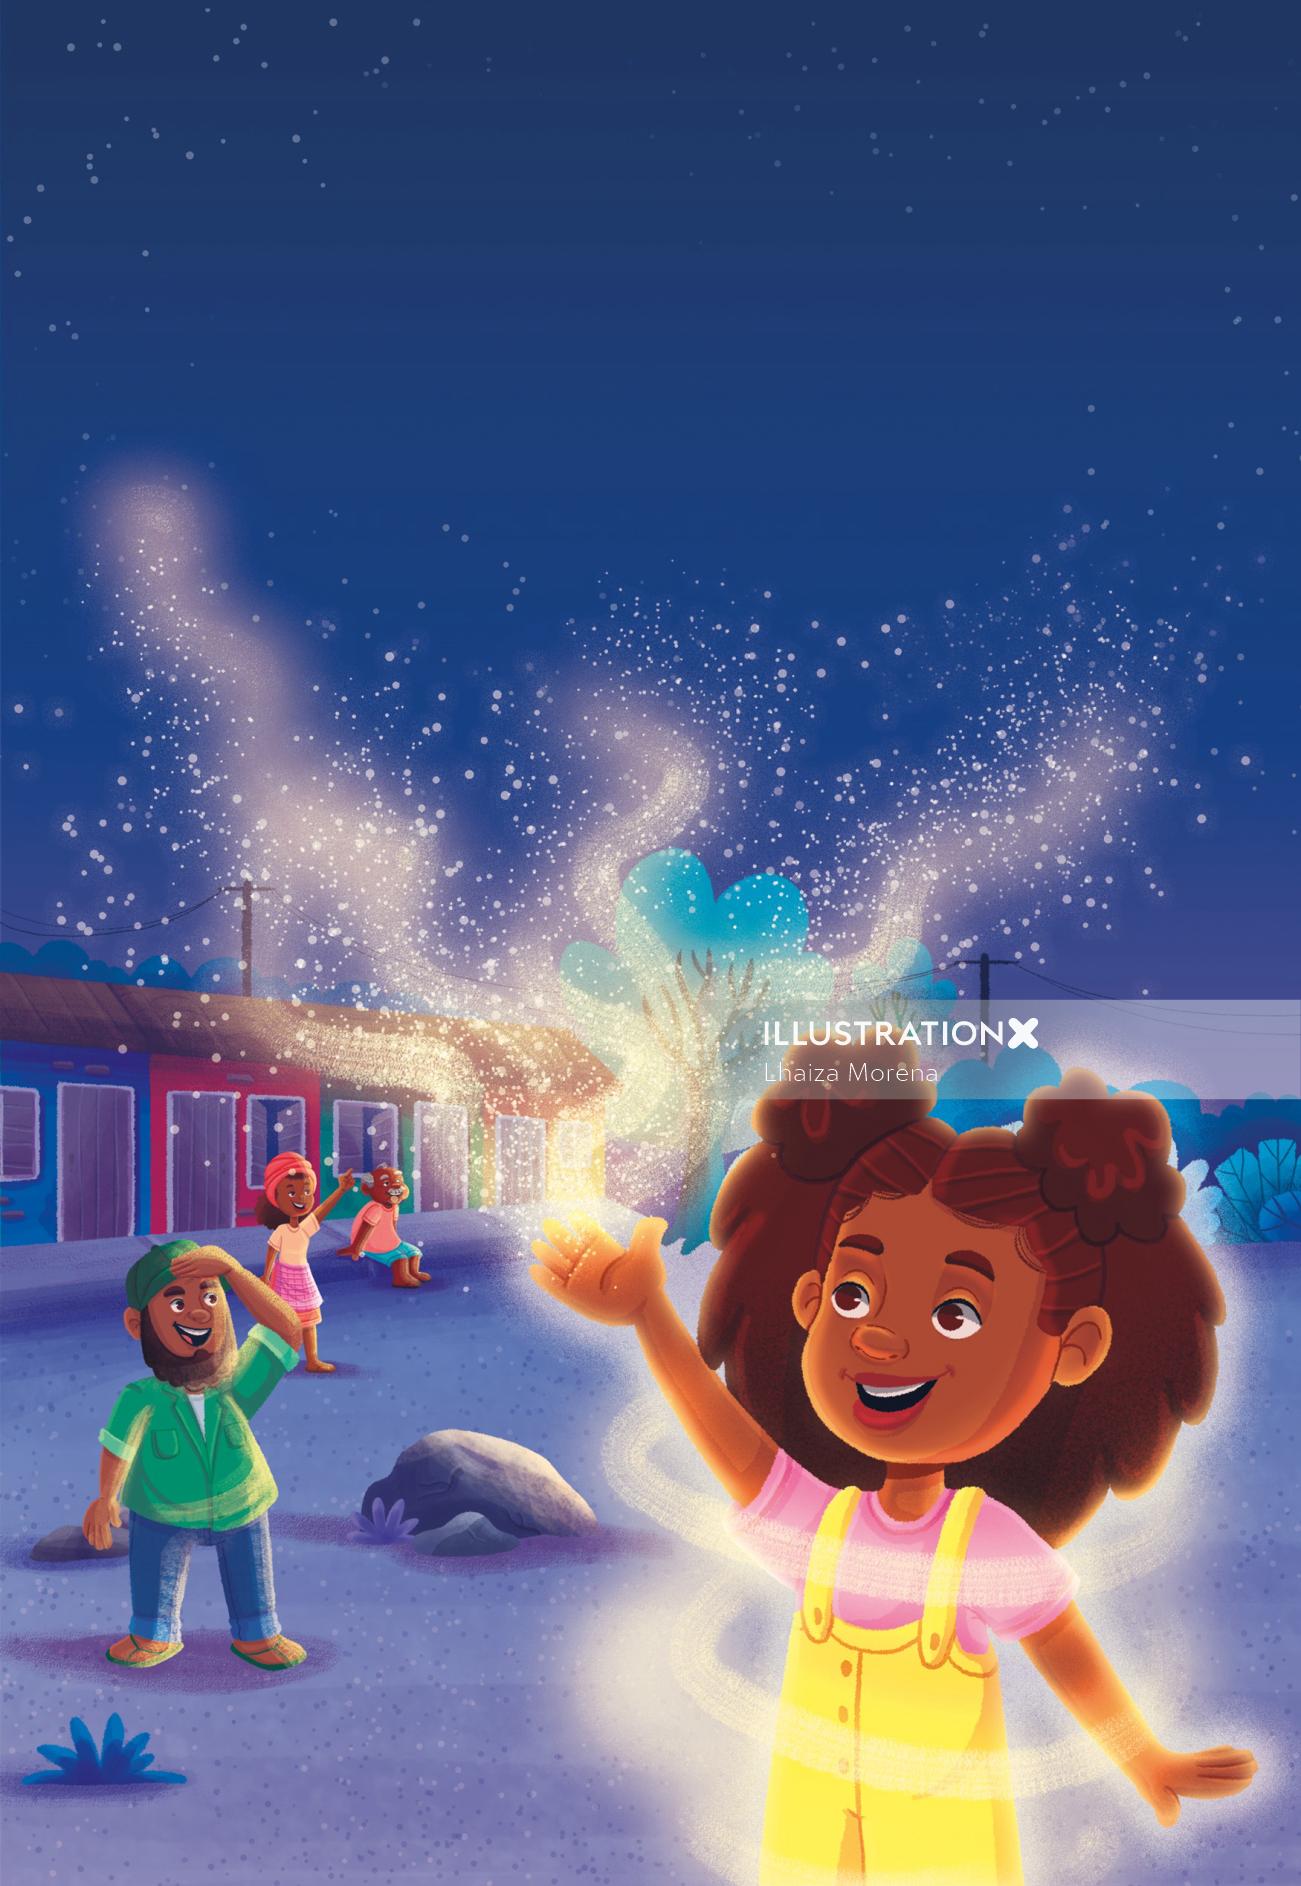 Children's Book - "As Três Marias"